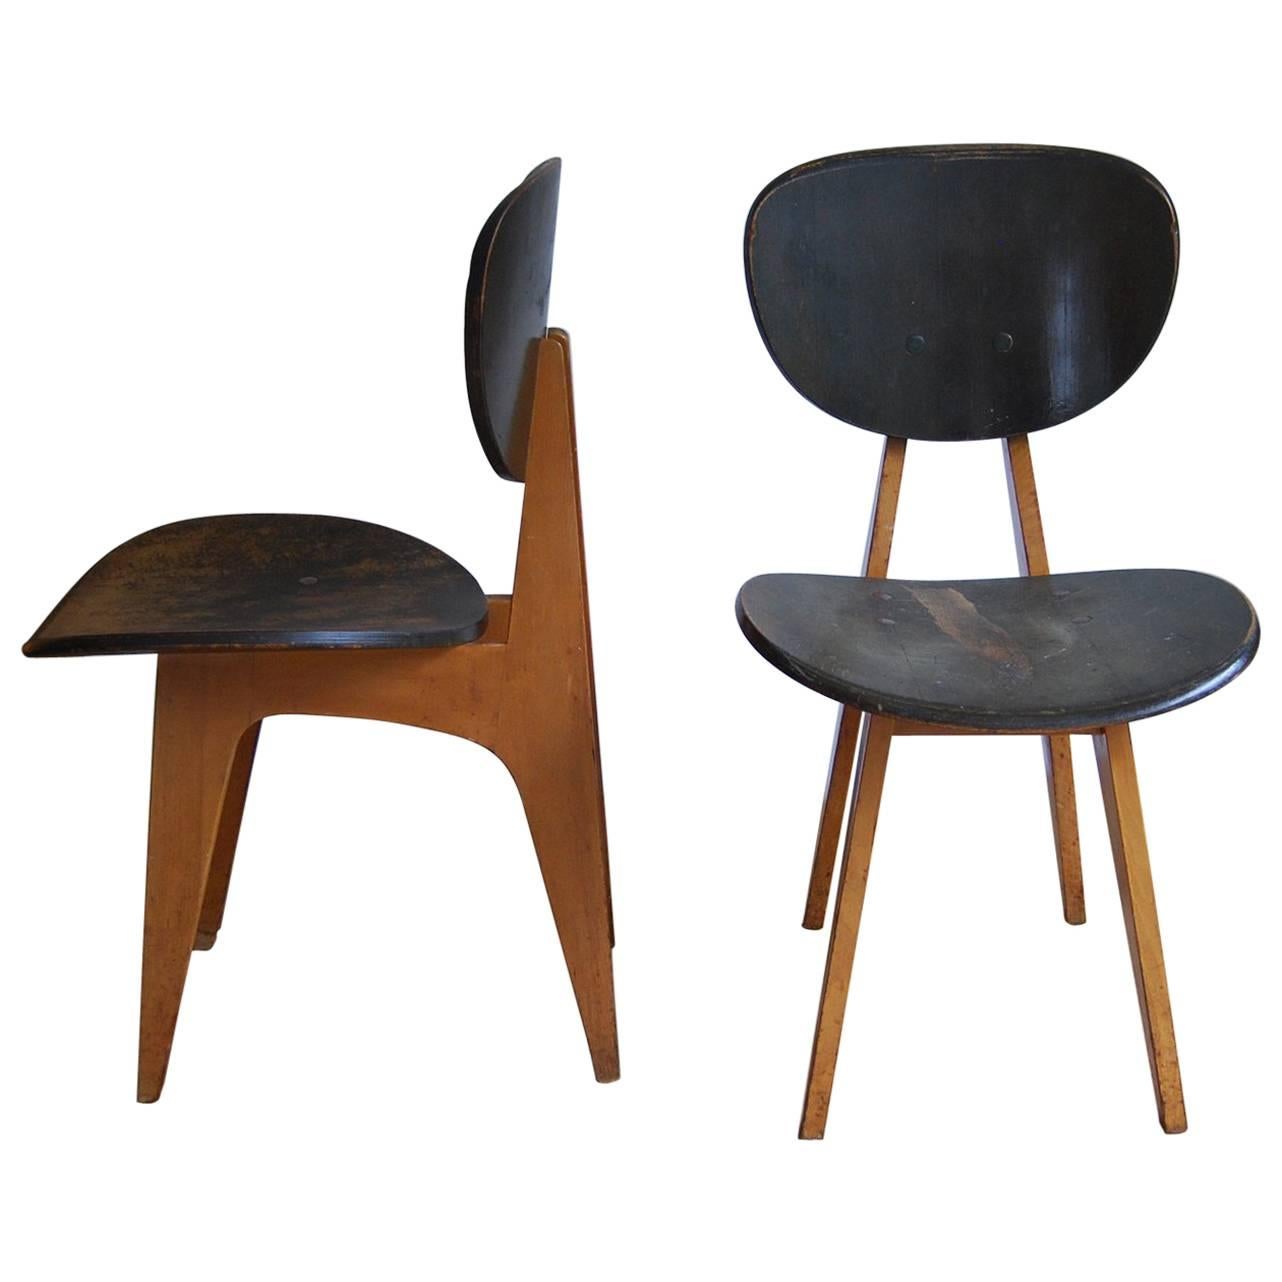 Pair of Side Chairs, Model No. 3221, by Junzo Sakakura